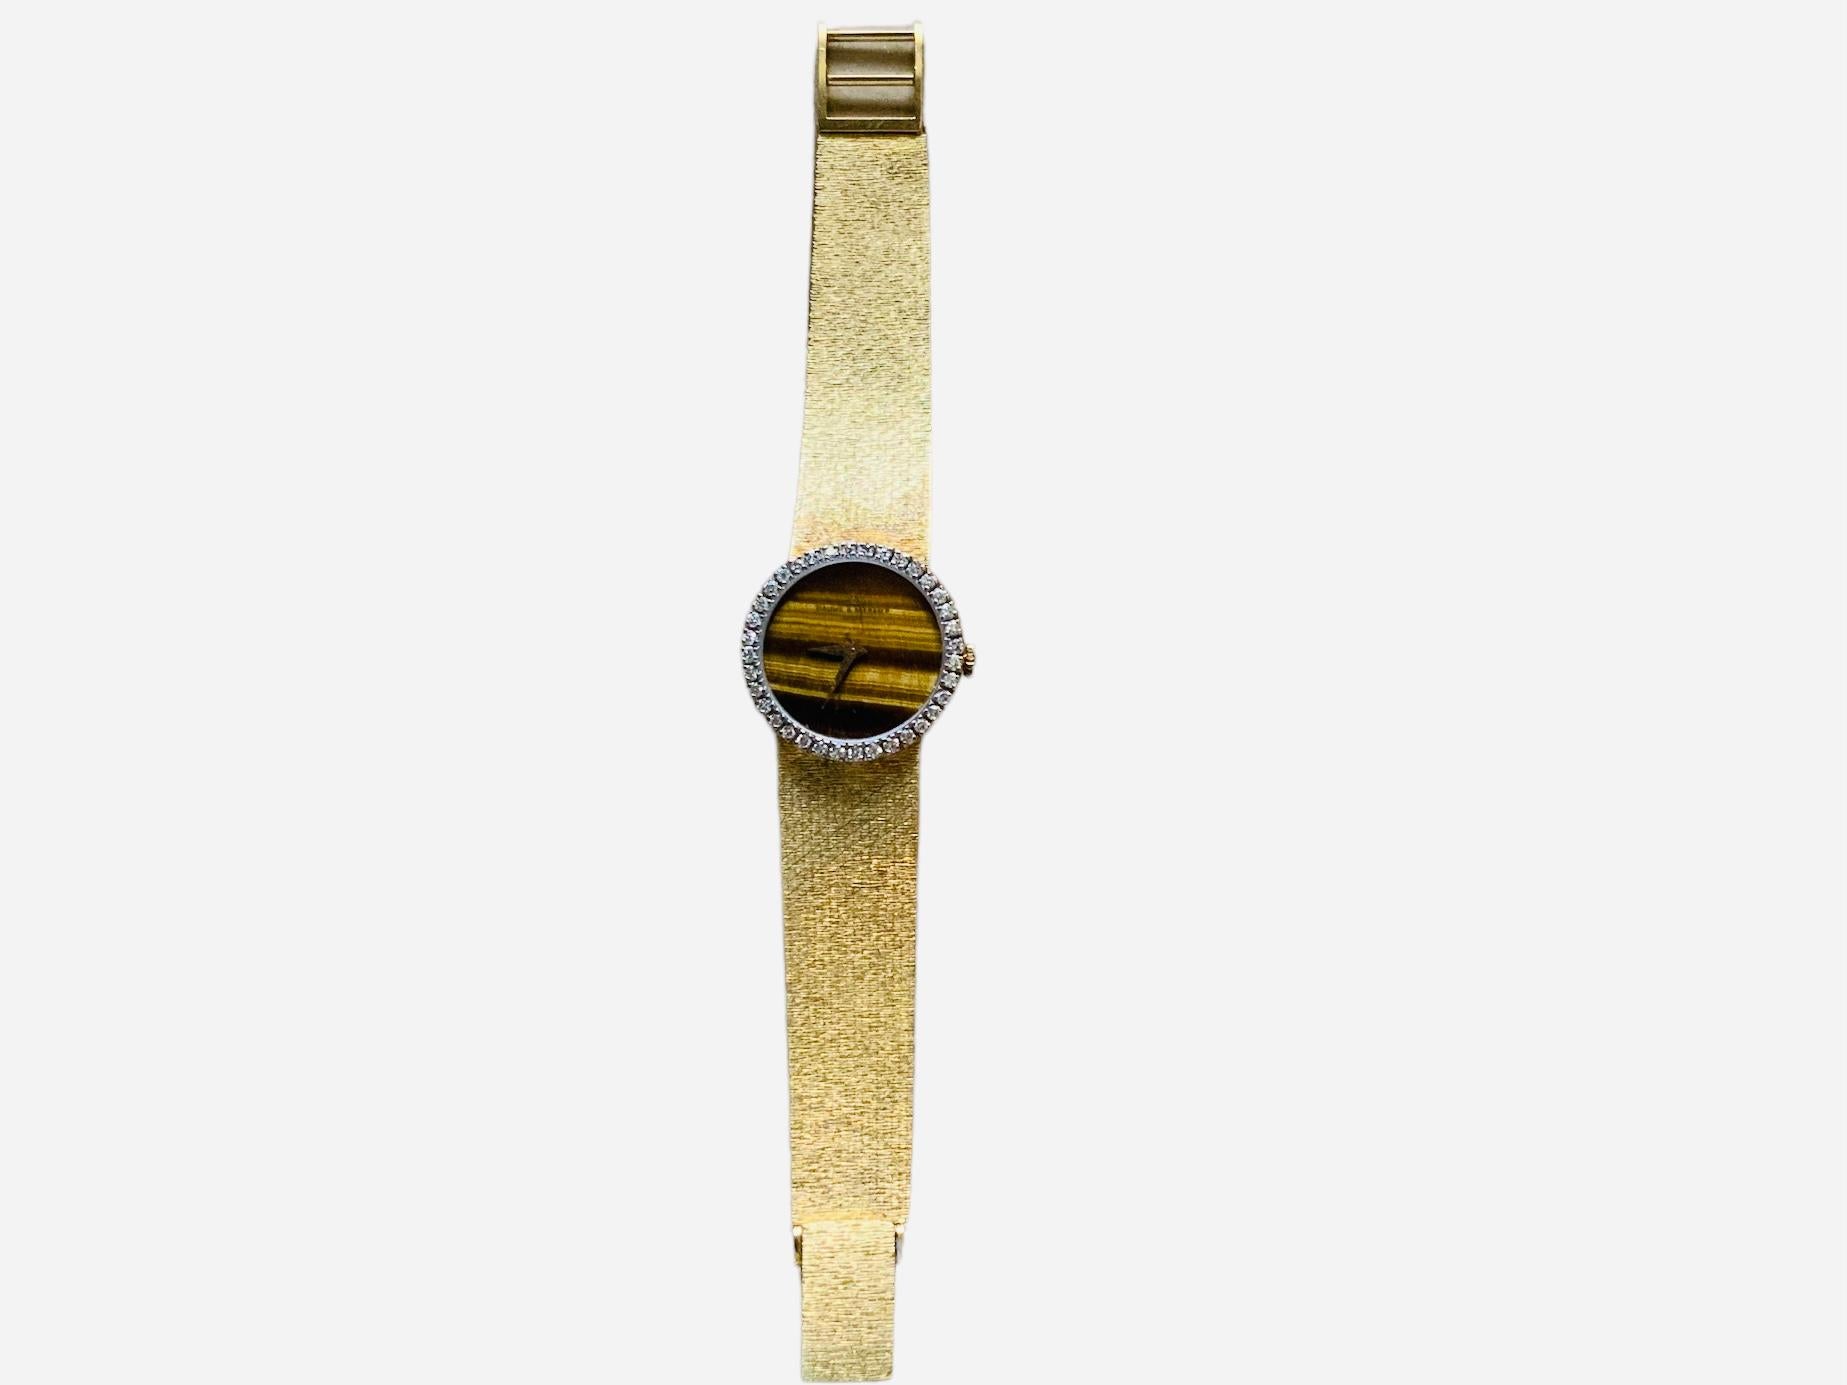 Dies ist ein 18K Gold Lady's Baumé & Mercier Uhr. Sie ist als elegante Kleideruhr bekannt. Sie ist mit einem Handaufzugswerk ausgestattet. Das runde Zifferblatt ist aus Tigerauge gefertigt und oben mit Baume & Mercier , Geneve gestempelt. Sie hat